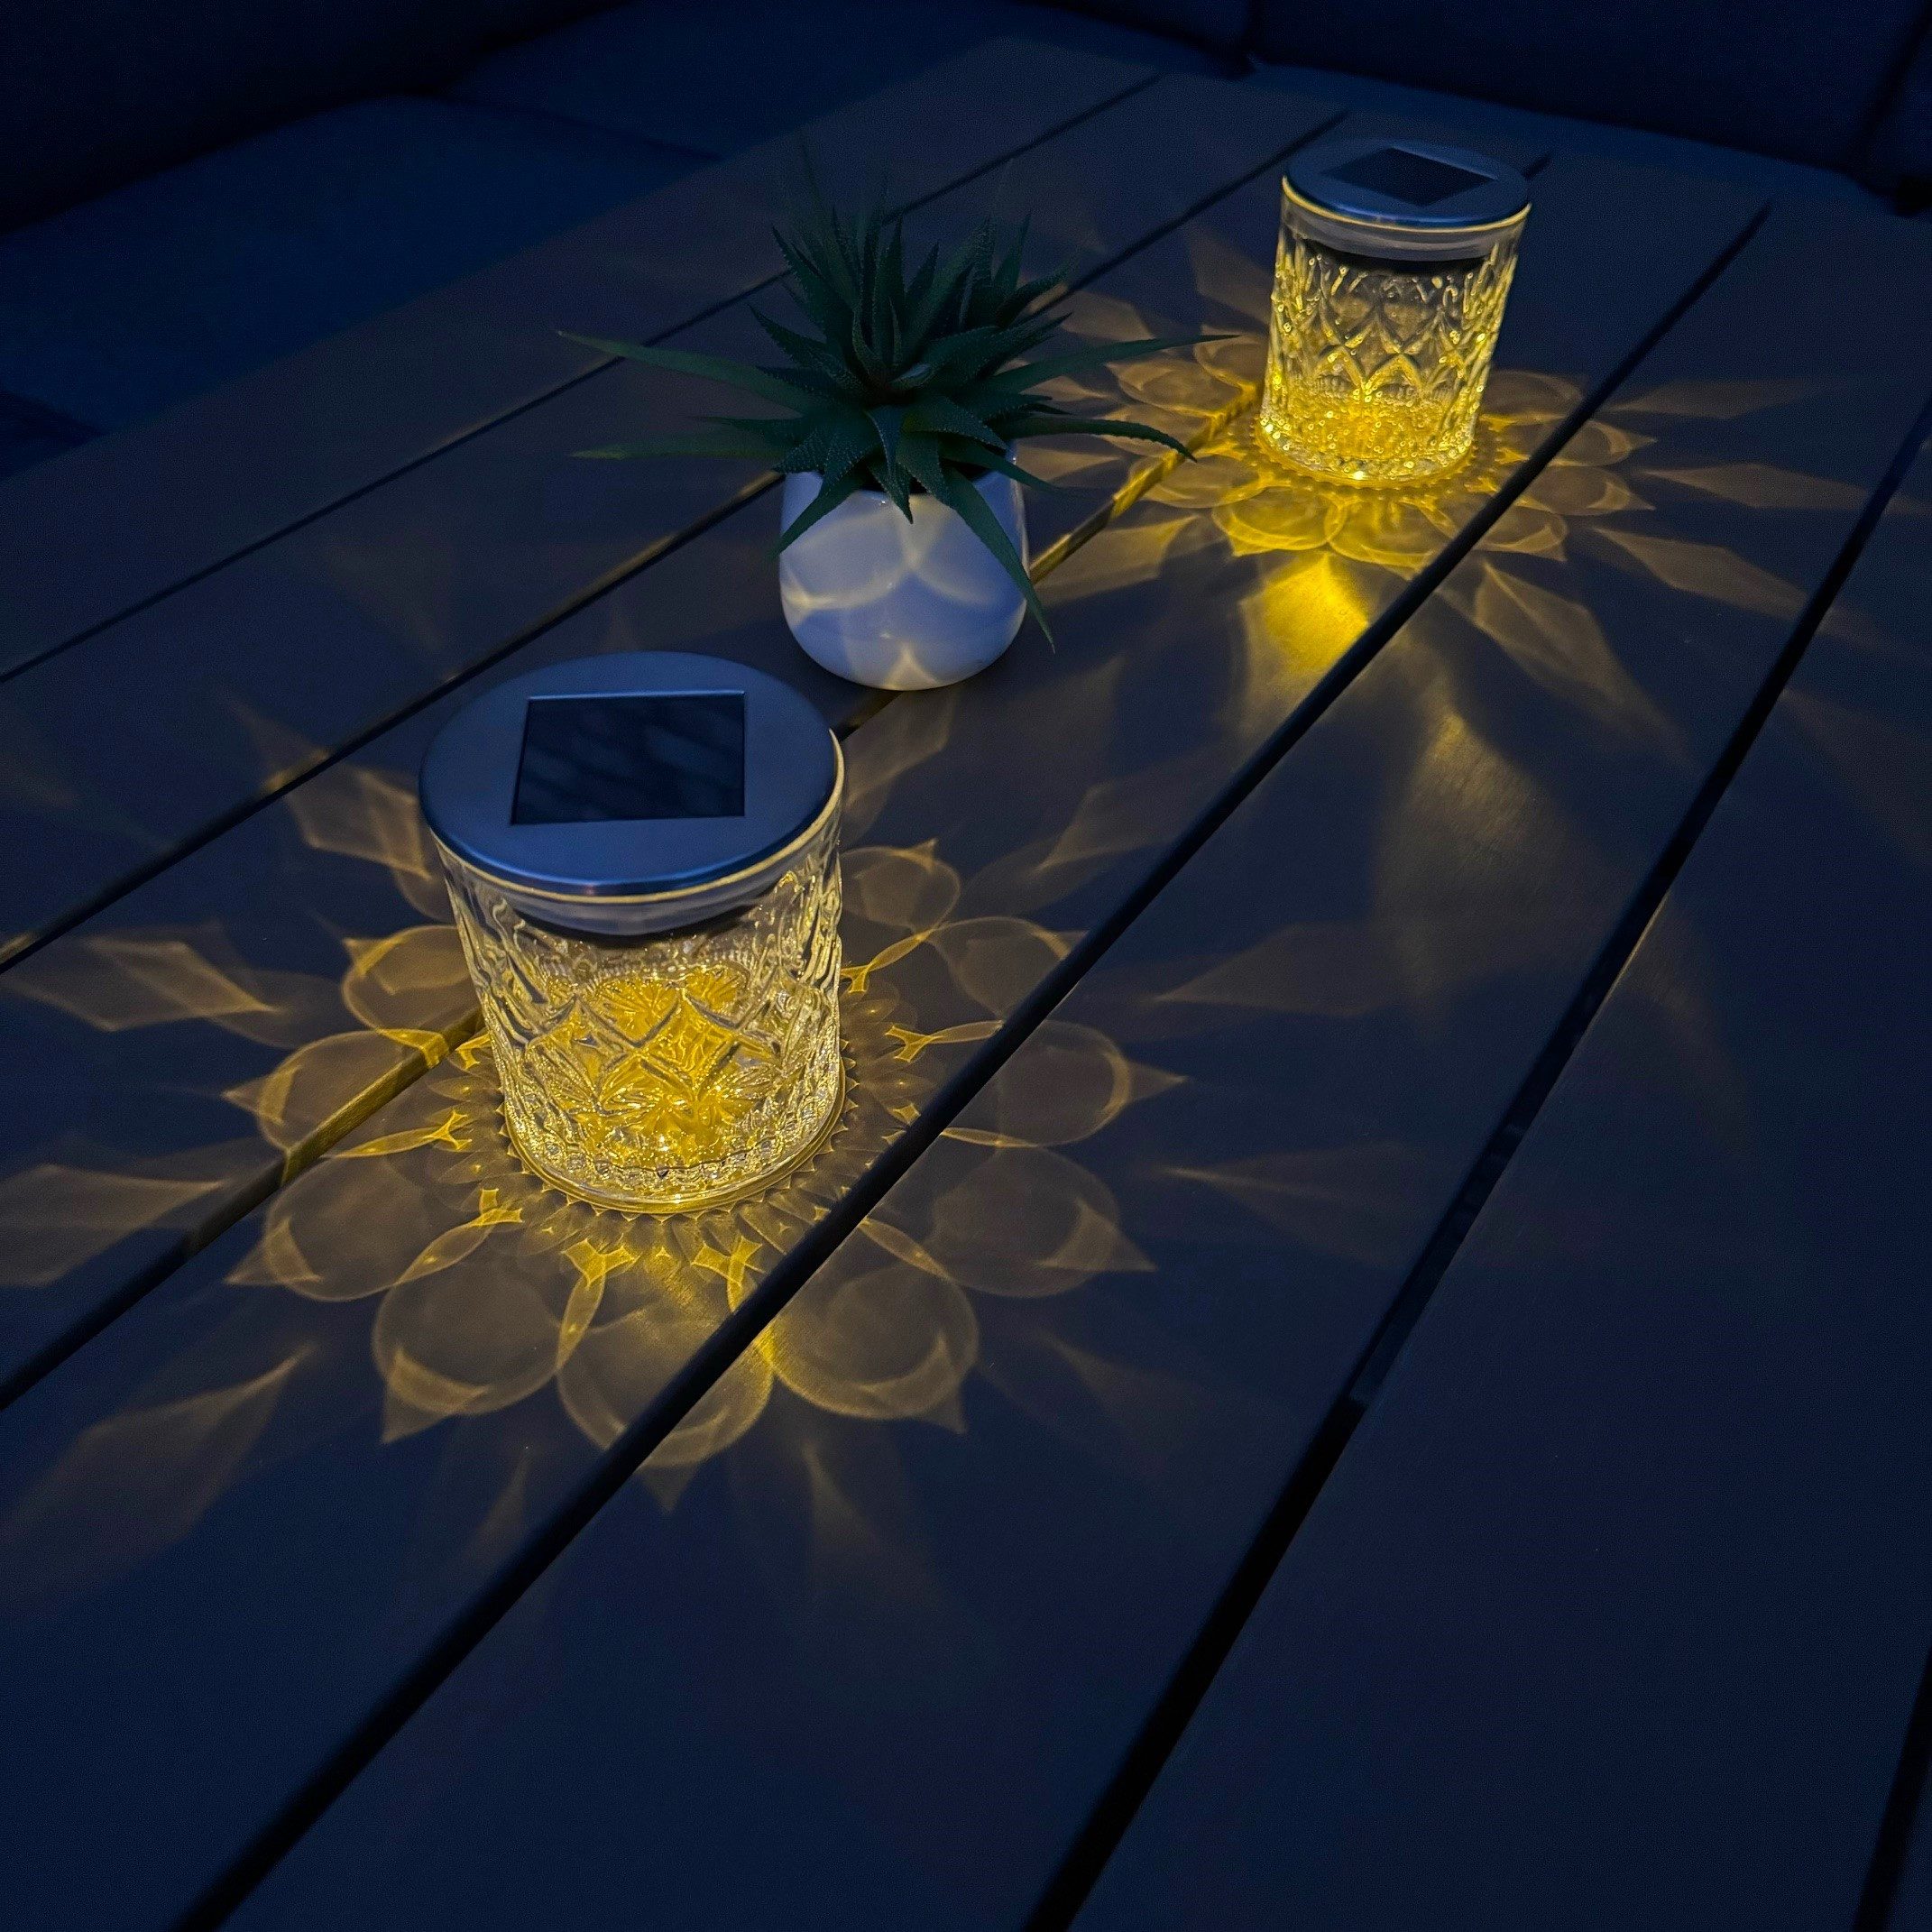 Online-Fuchs LED Außen-Tischleuchte Solar mit dekorativem Blütendesign Lichtbild - 2er Set Tischlampen, Solarlampen für Garten, Balkon, Terrasse -, Warmweiß, Farbwechsel oder Farbstop, Gartendeko outdoor